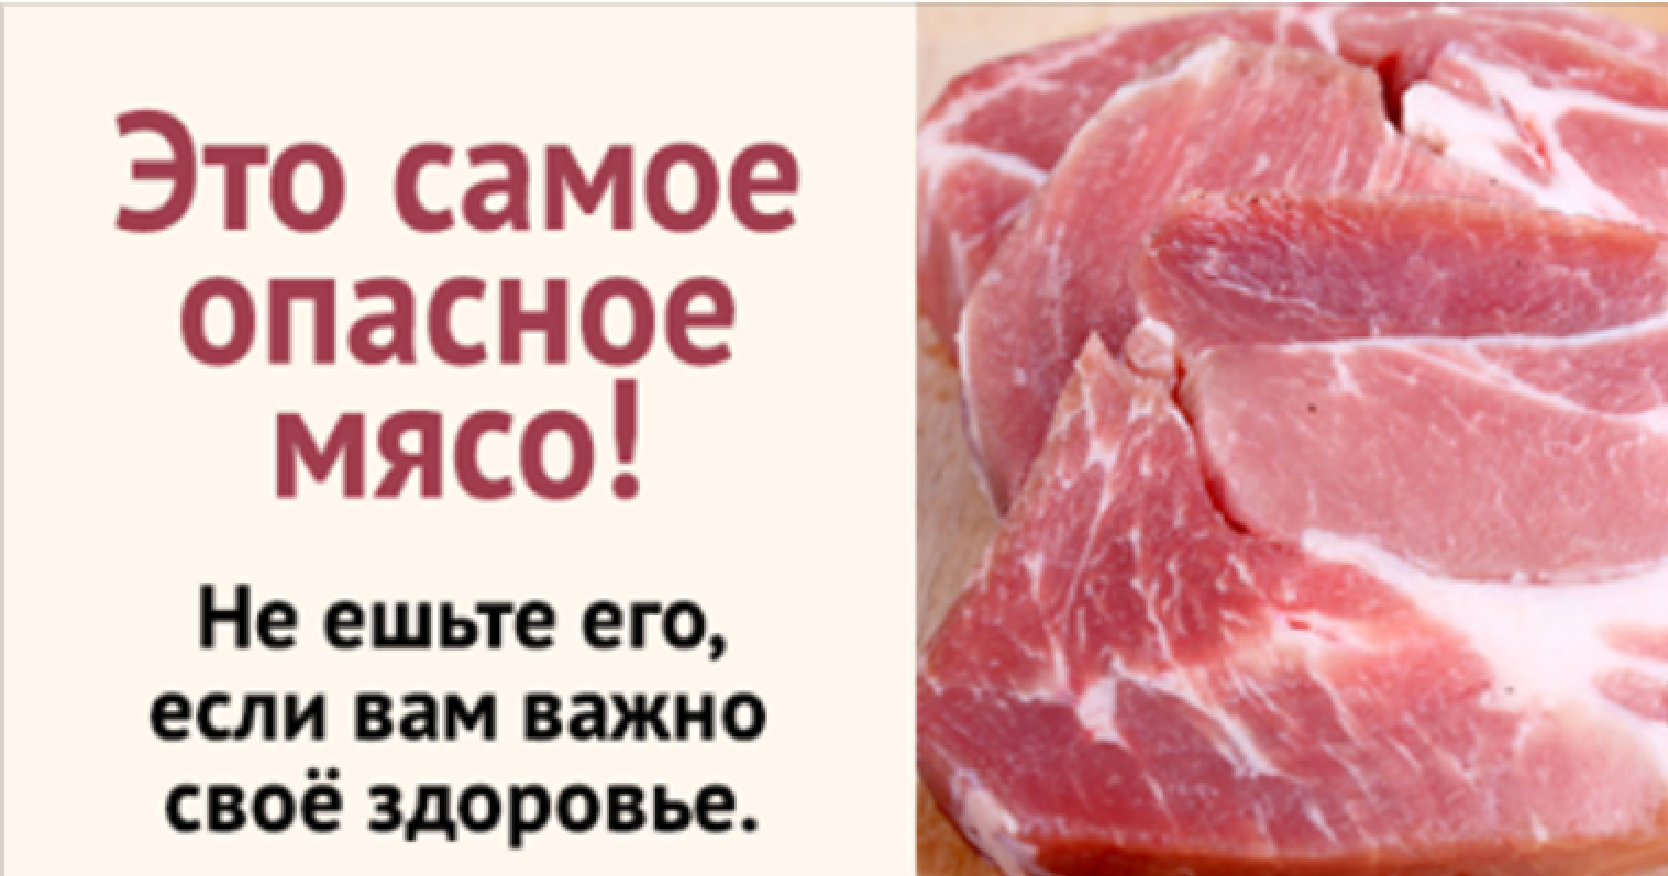 Сайт мясо ем. Полезность мяса. Свинина опасна для здоровья.